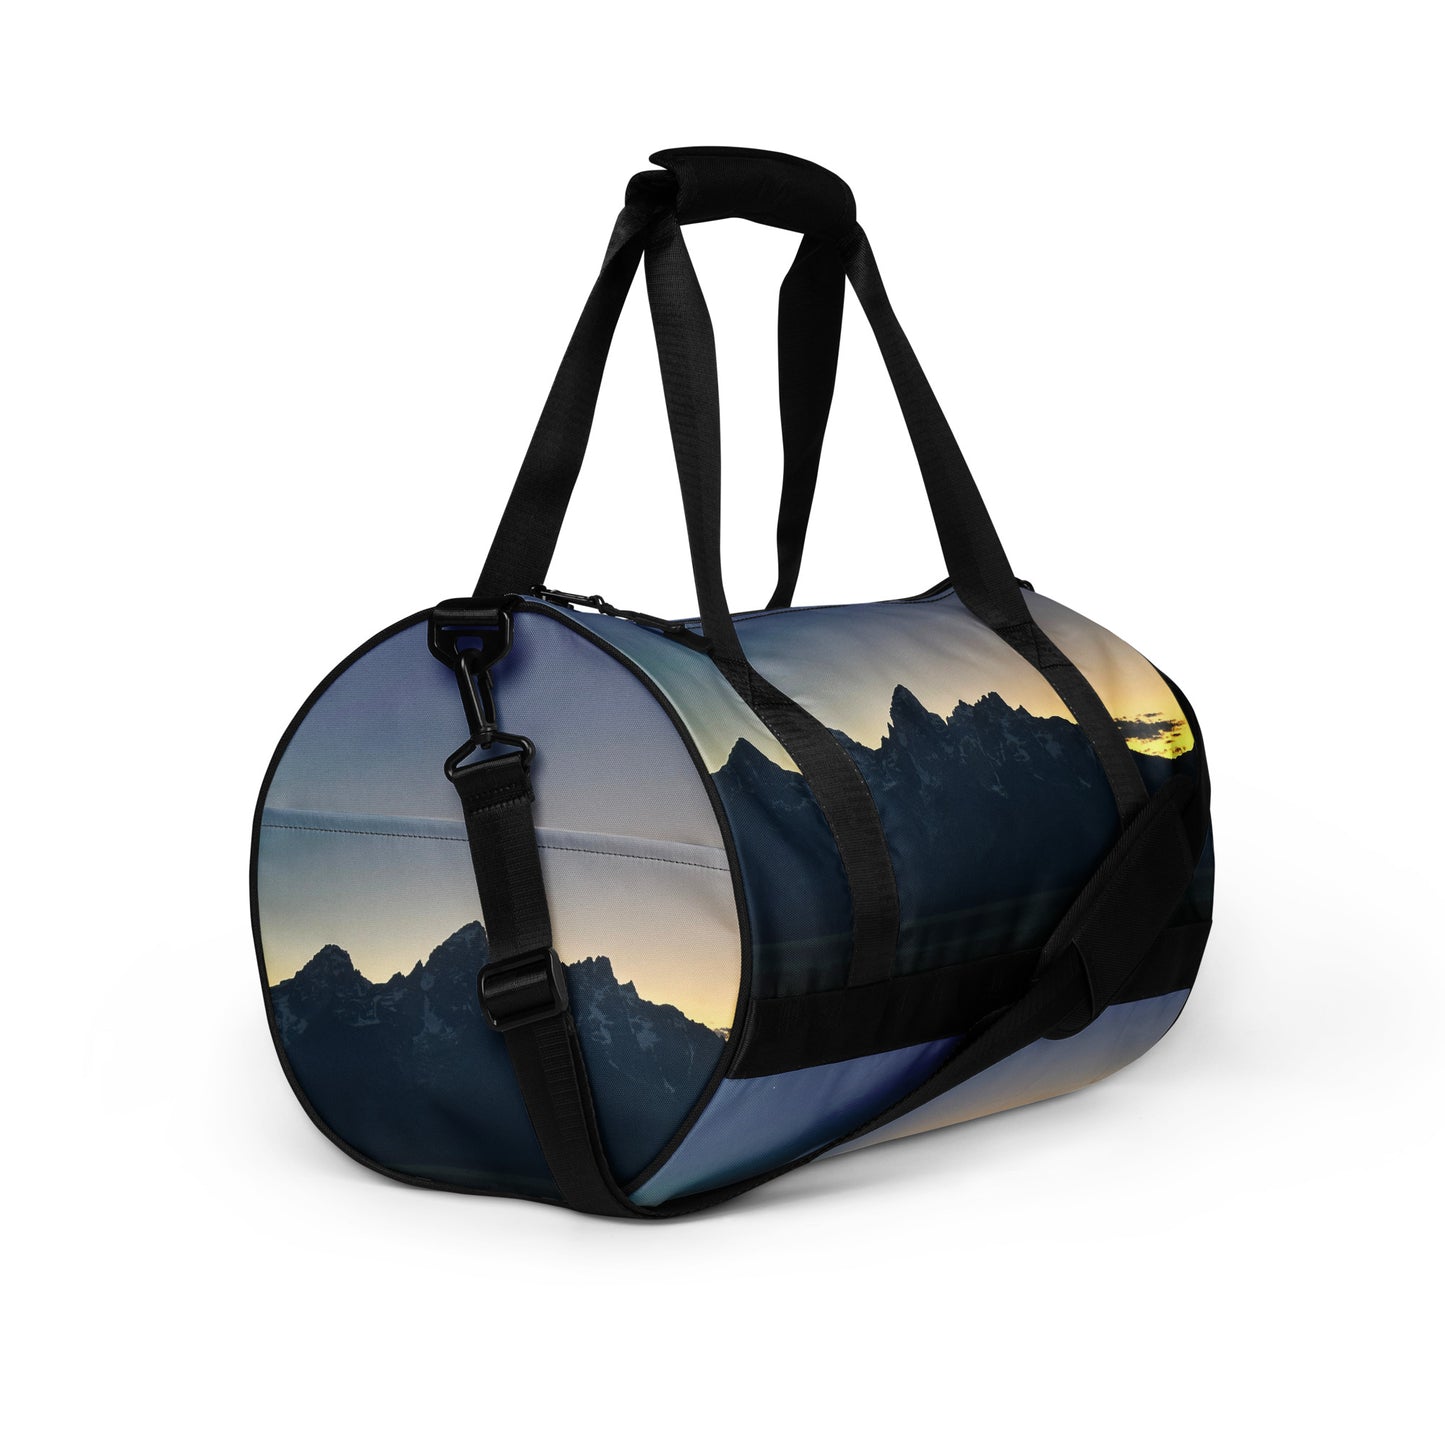 Tetons at Sunset All-over print gym bag